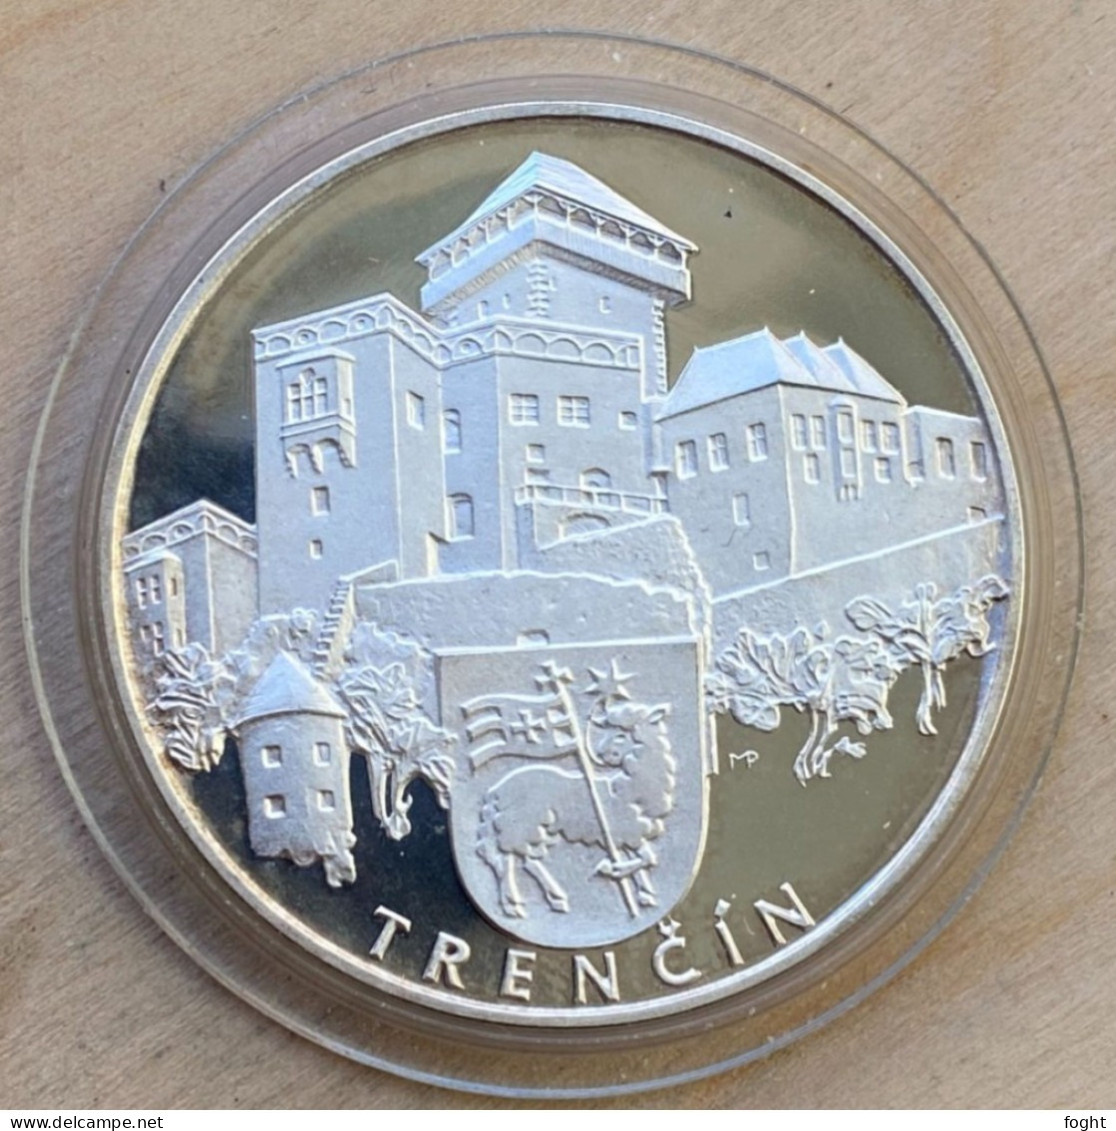 .900 Silver Slovak Souvenir Medal - Slovak Castles: TRENČÍN,6477 - Firma's